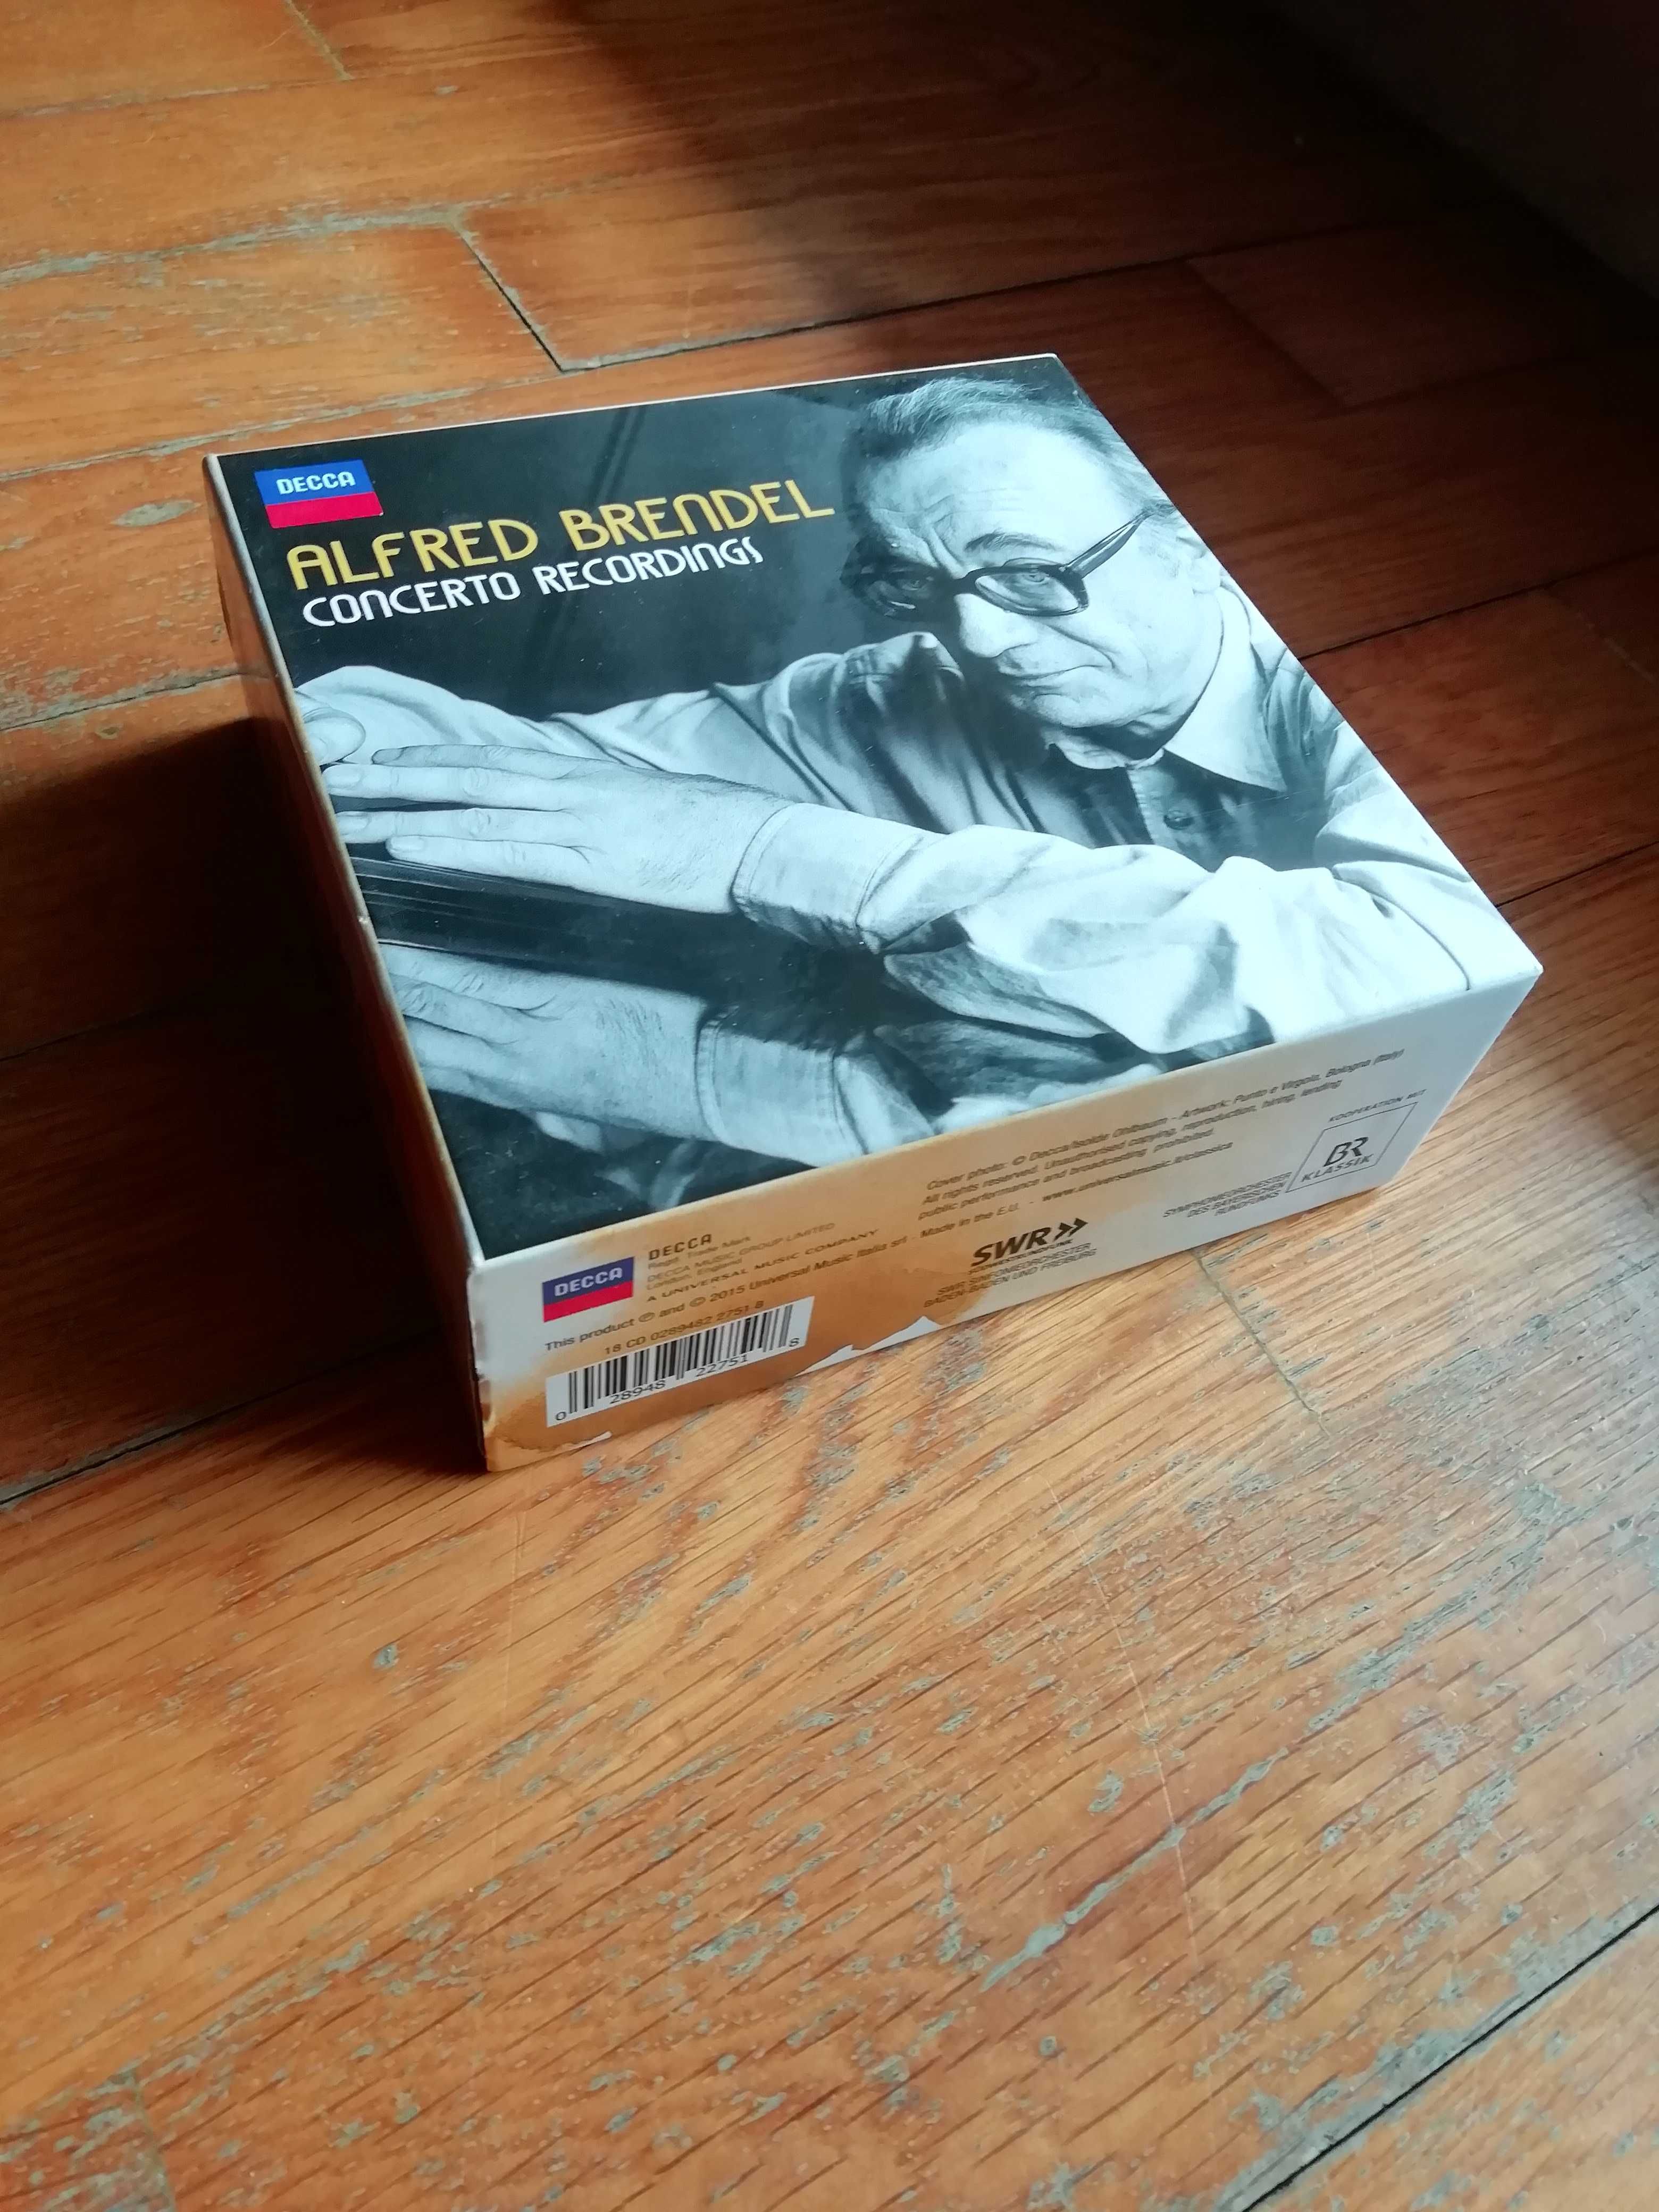 Alfred Brendel - Concerto Recordings